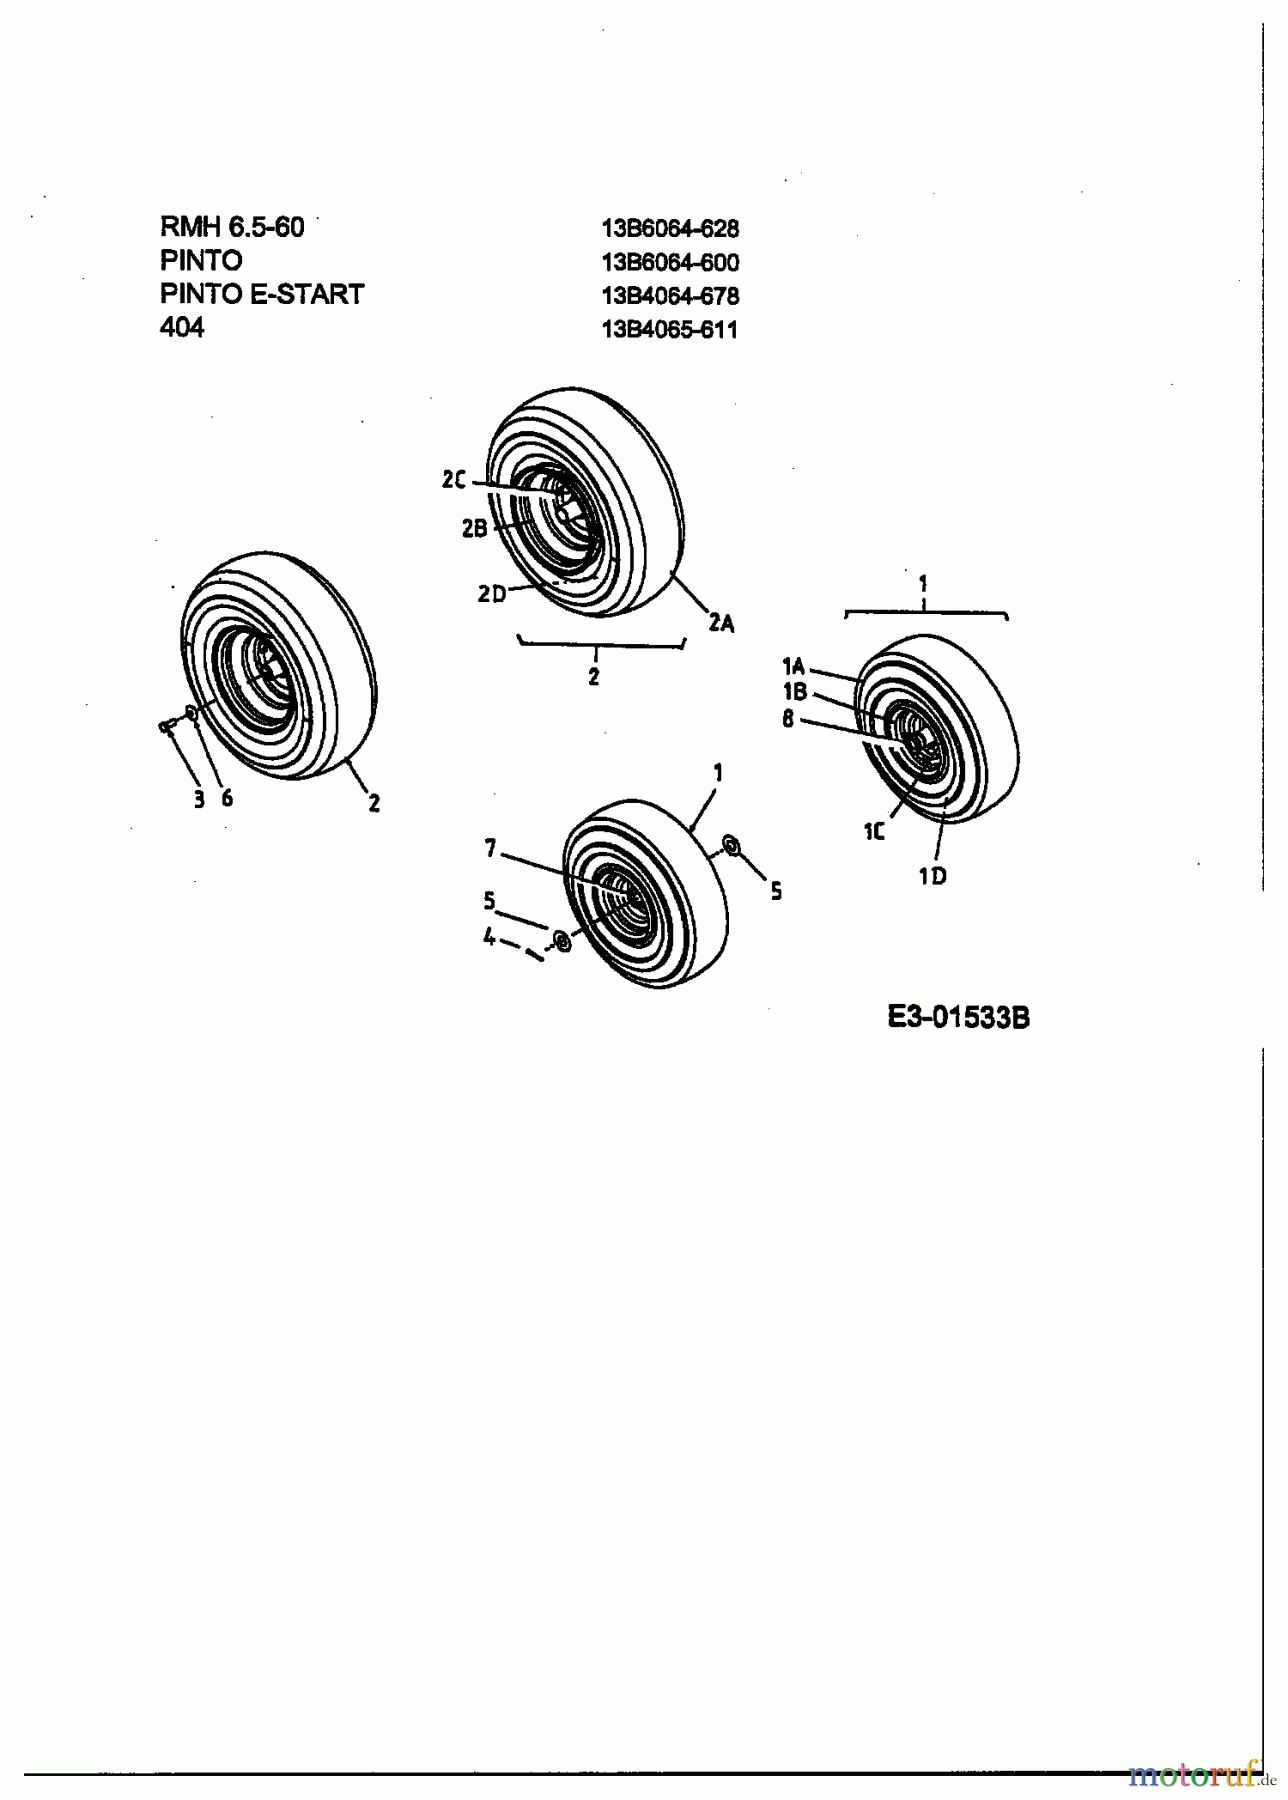  Lawnflite Lawn tractors 404 13B4065-611  (2003) Wheels